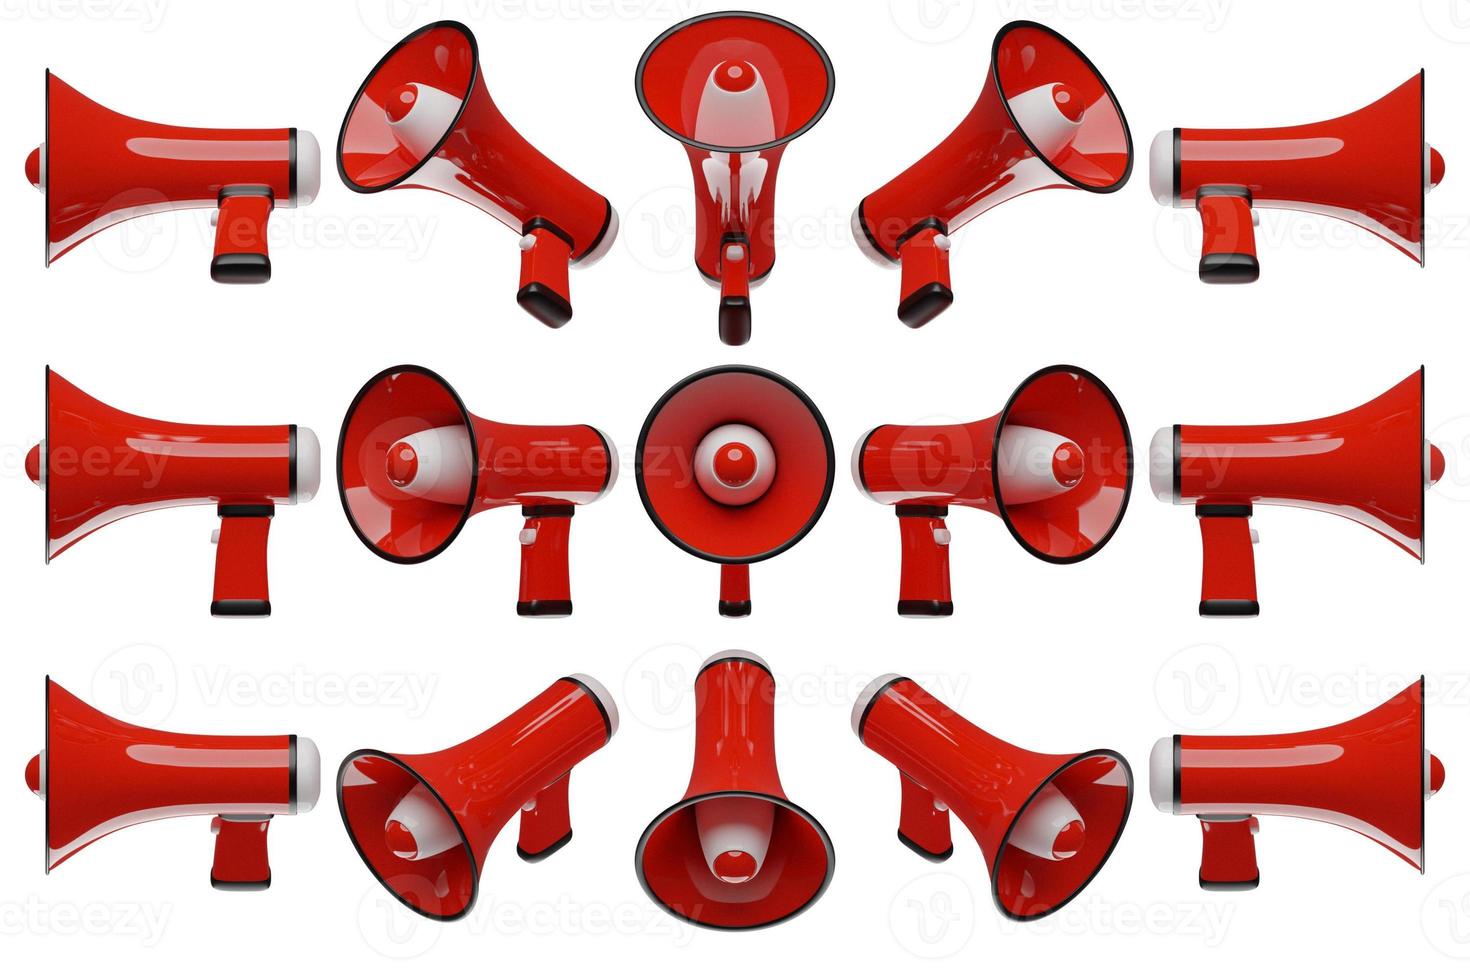 haut-parleur de dessin animé rouge de tous les côtés sur un fond monochrome blanc. Illustration 3D d'un mégaphone. symbole publicitaire, concept de promotion. photo